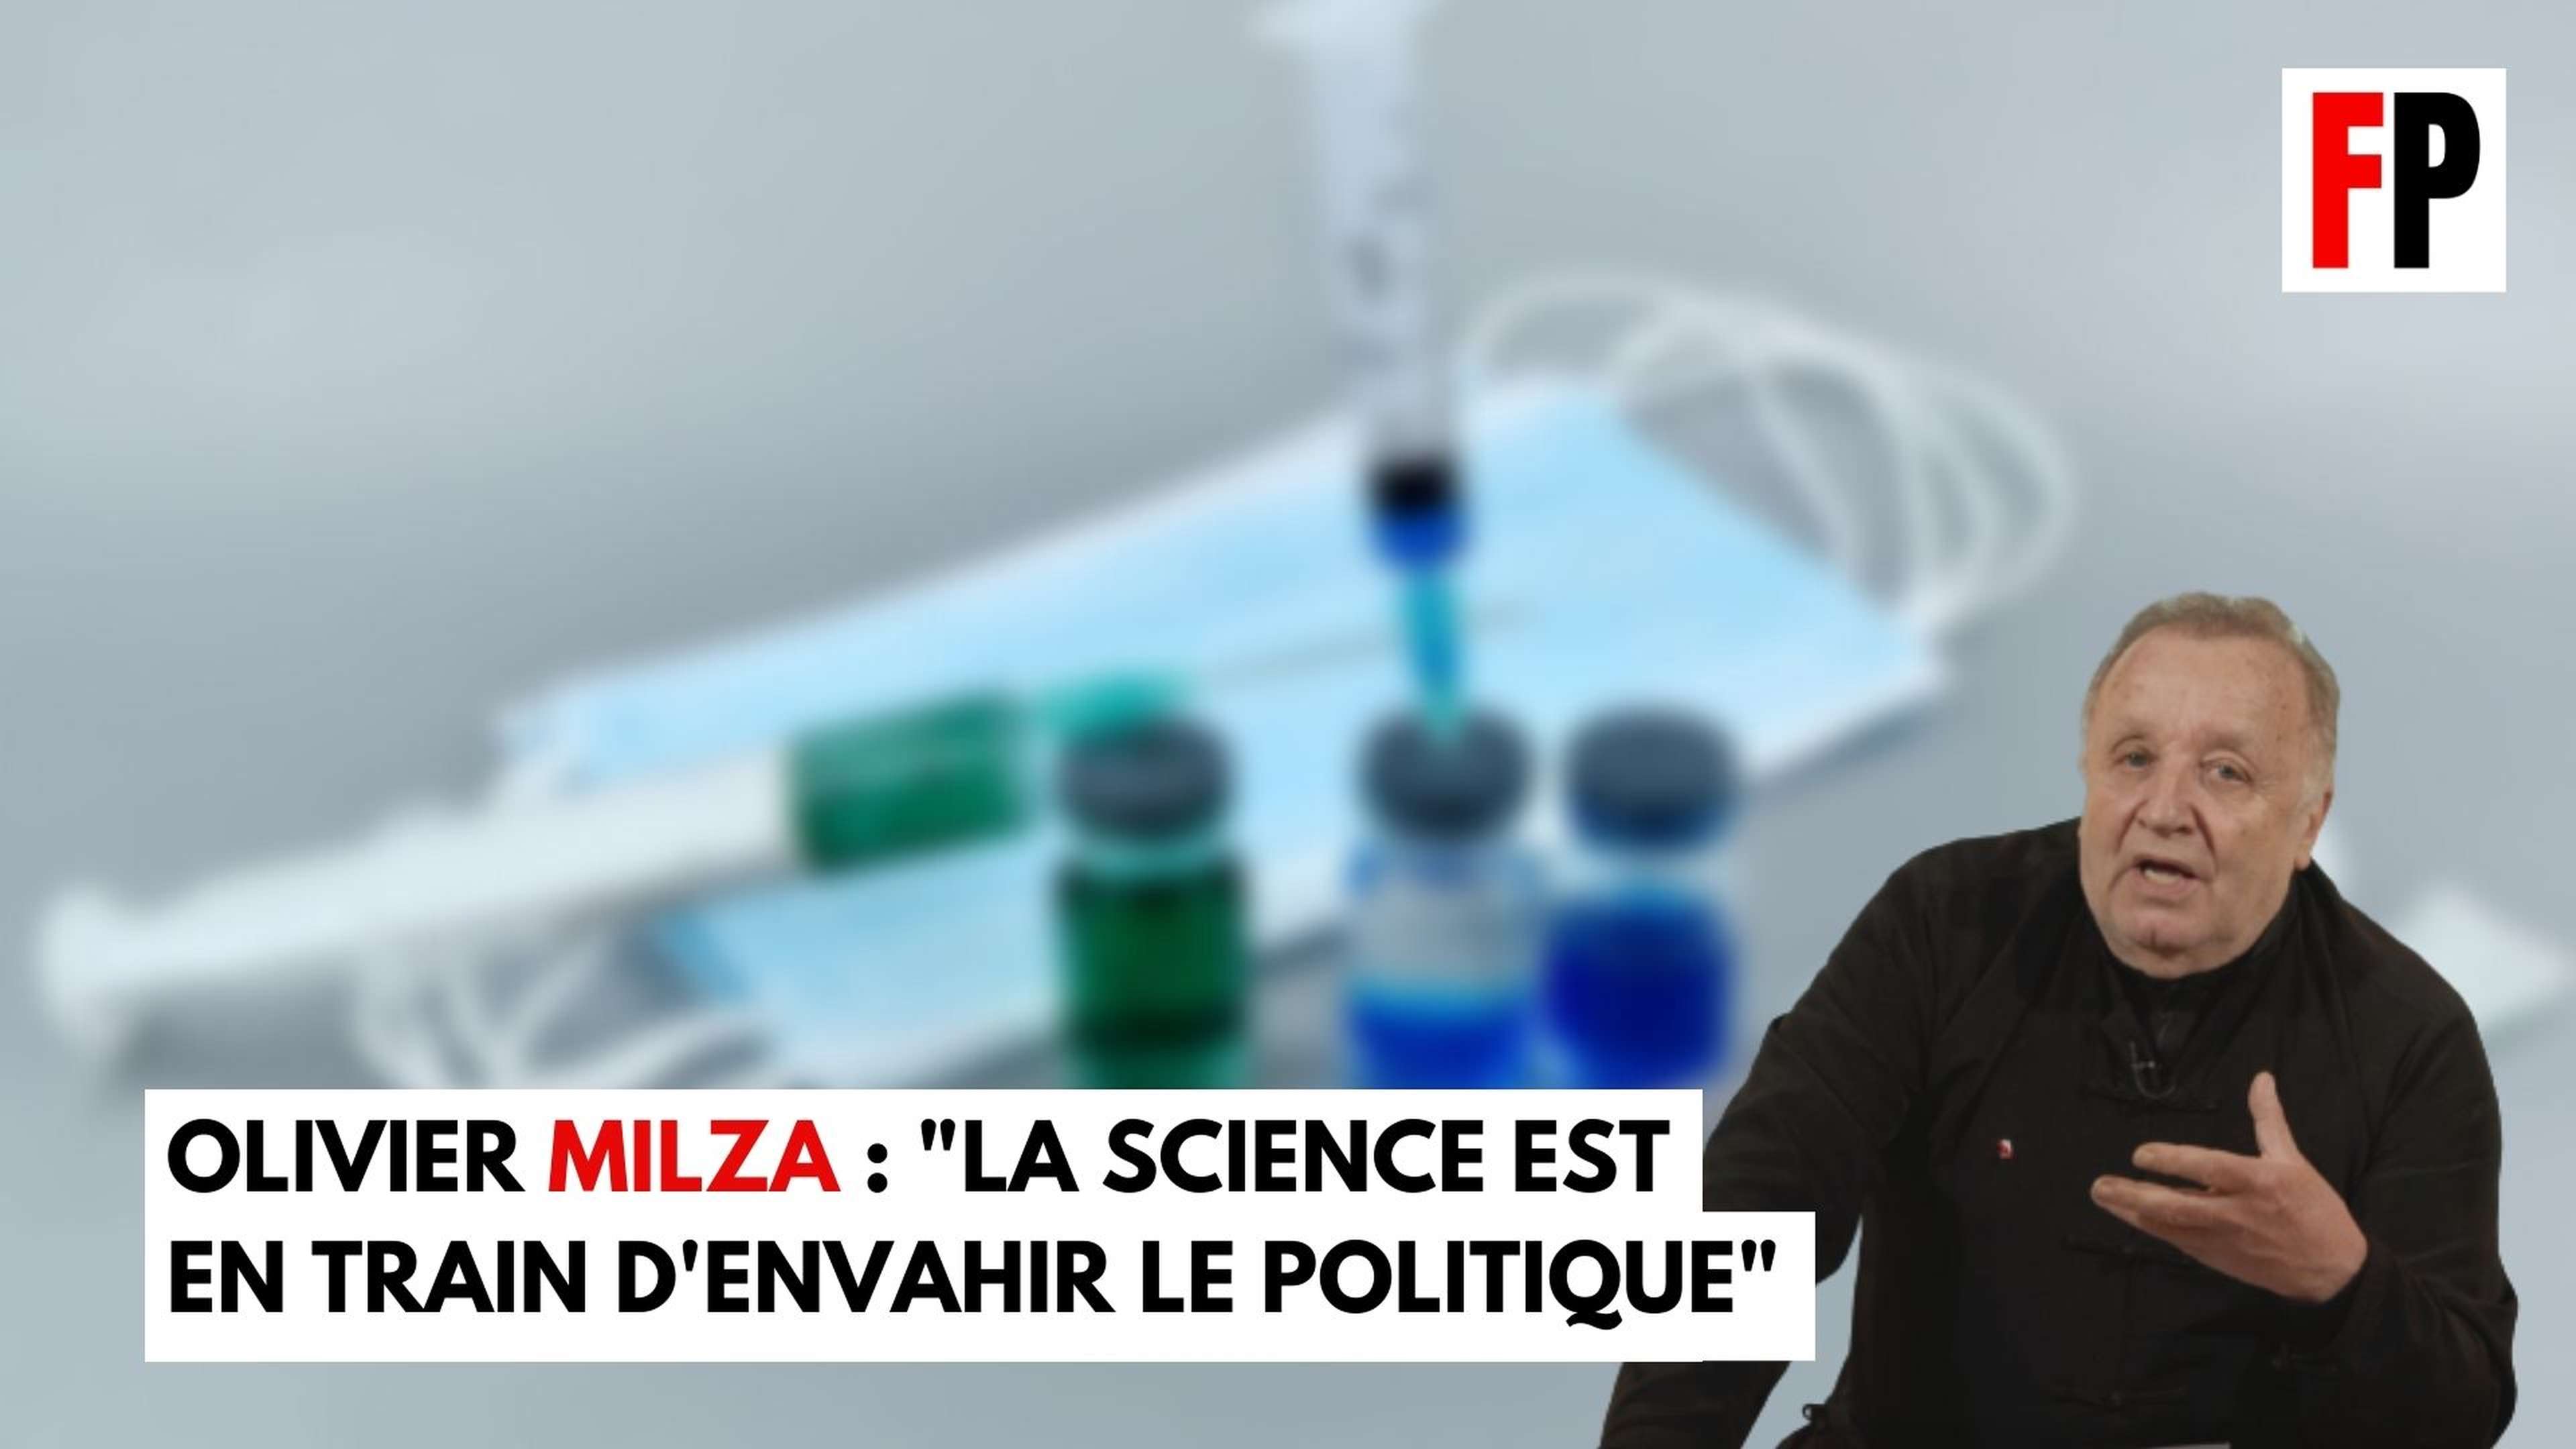 Olivier Milza : "La science est en train d'envahir le politique"